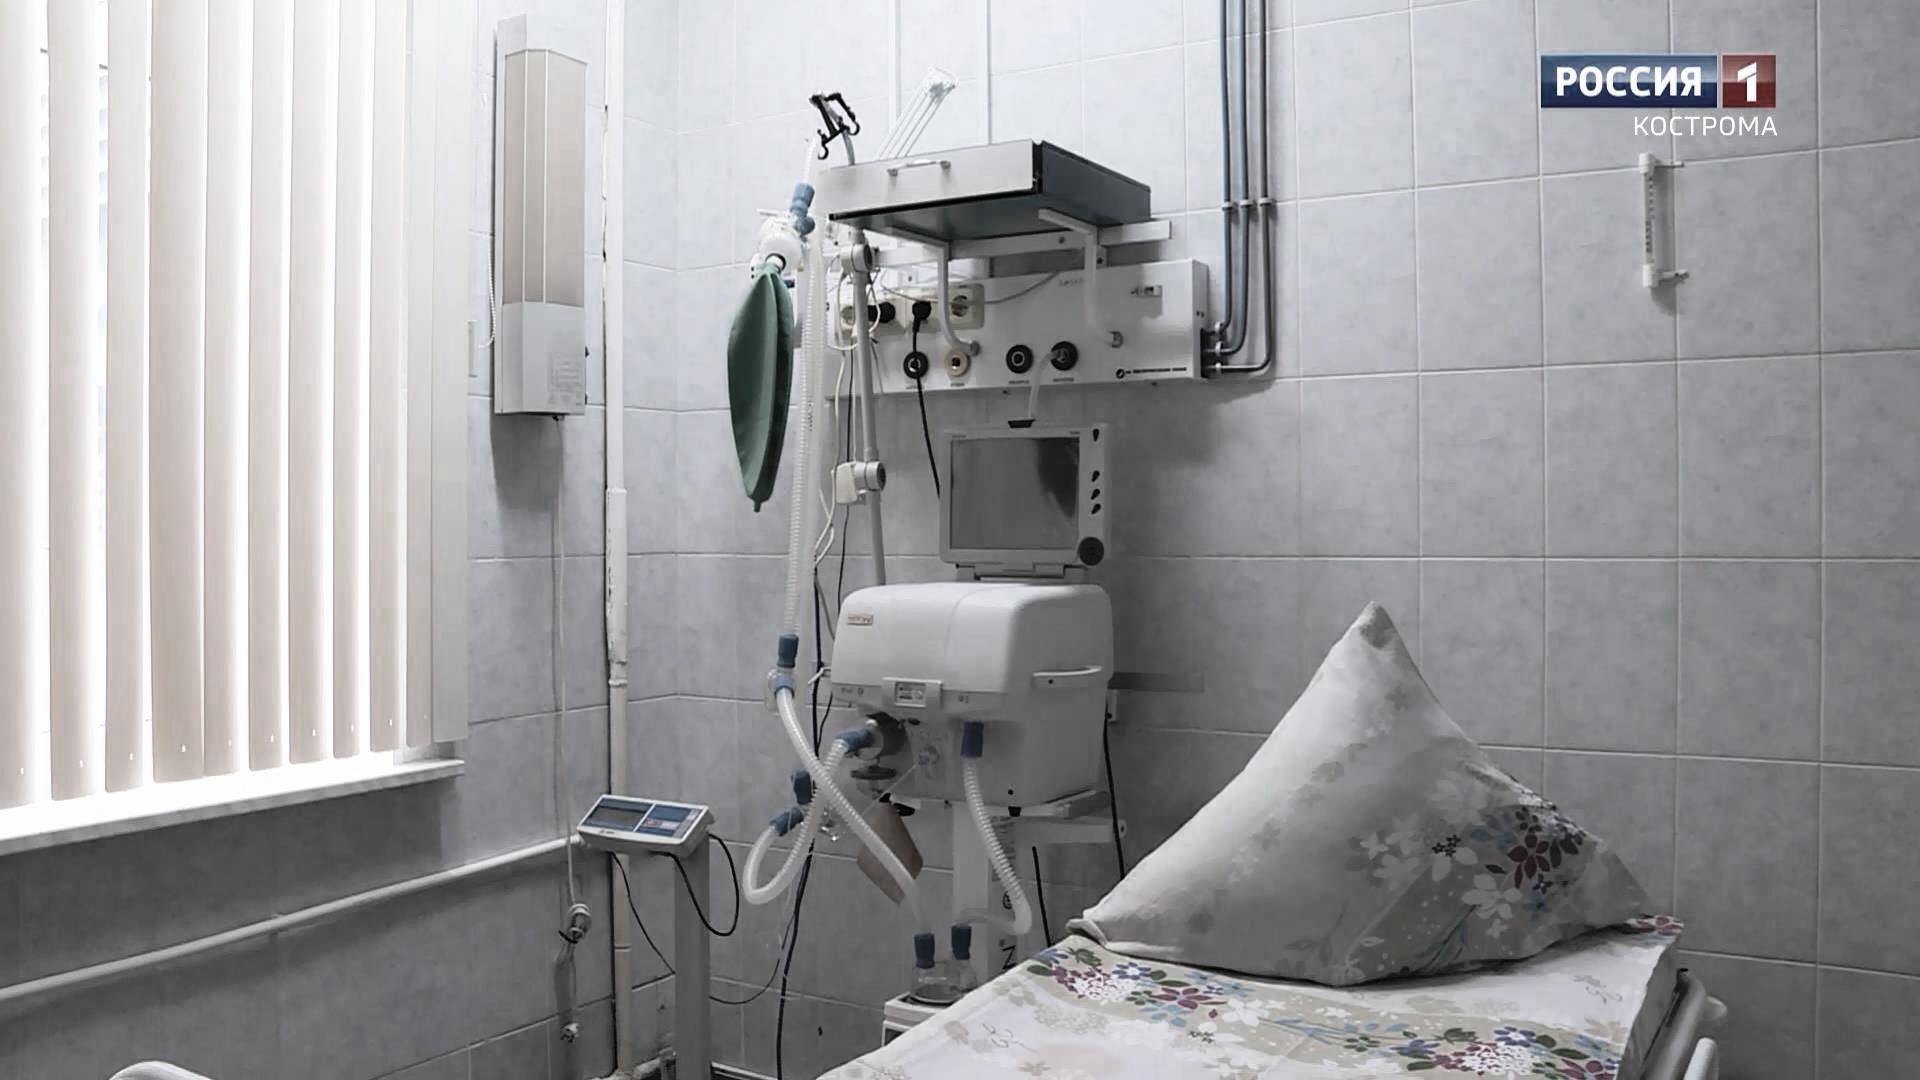 В Костроме скончались два пациента с коронавирусом